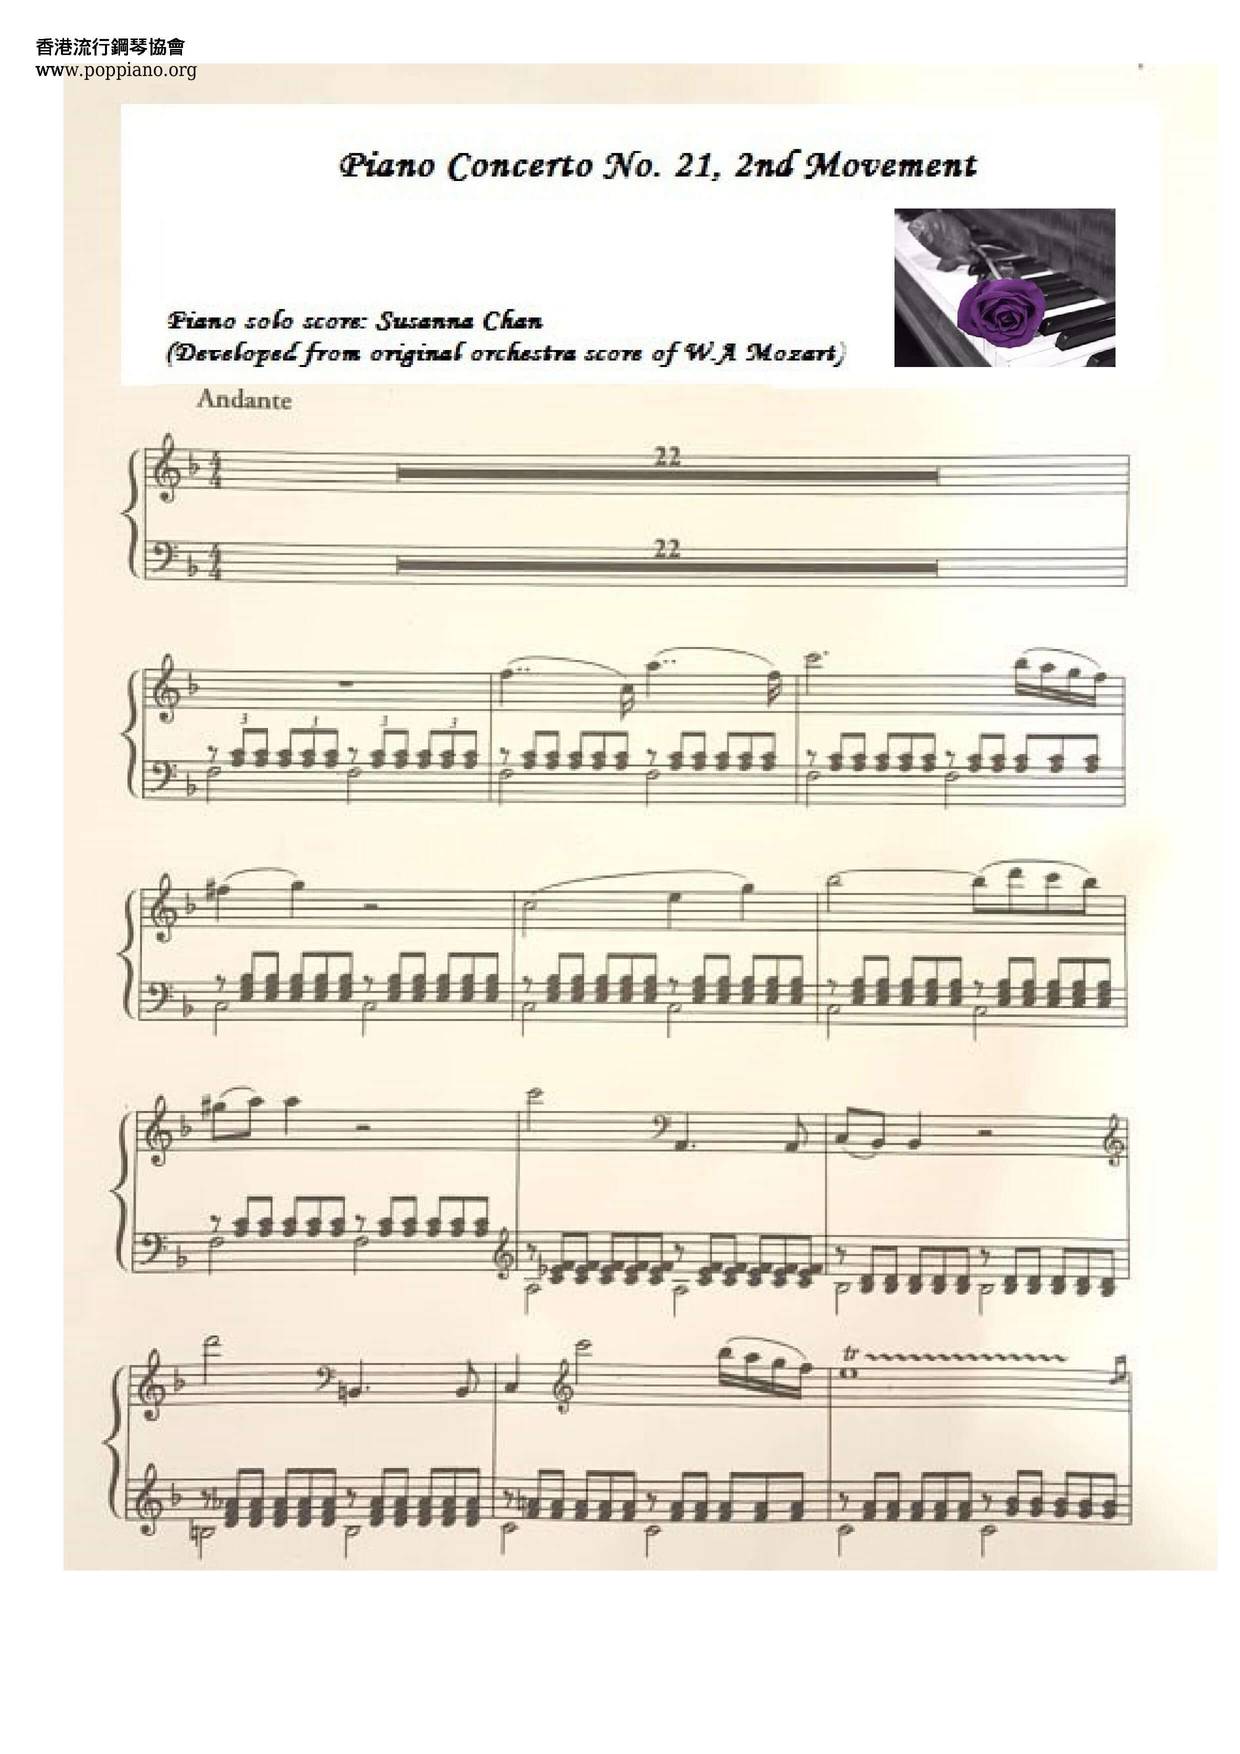 Piano Concerto No. 21, 2nd Movement Score